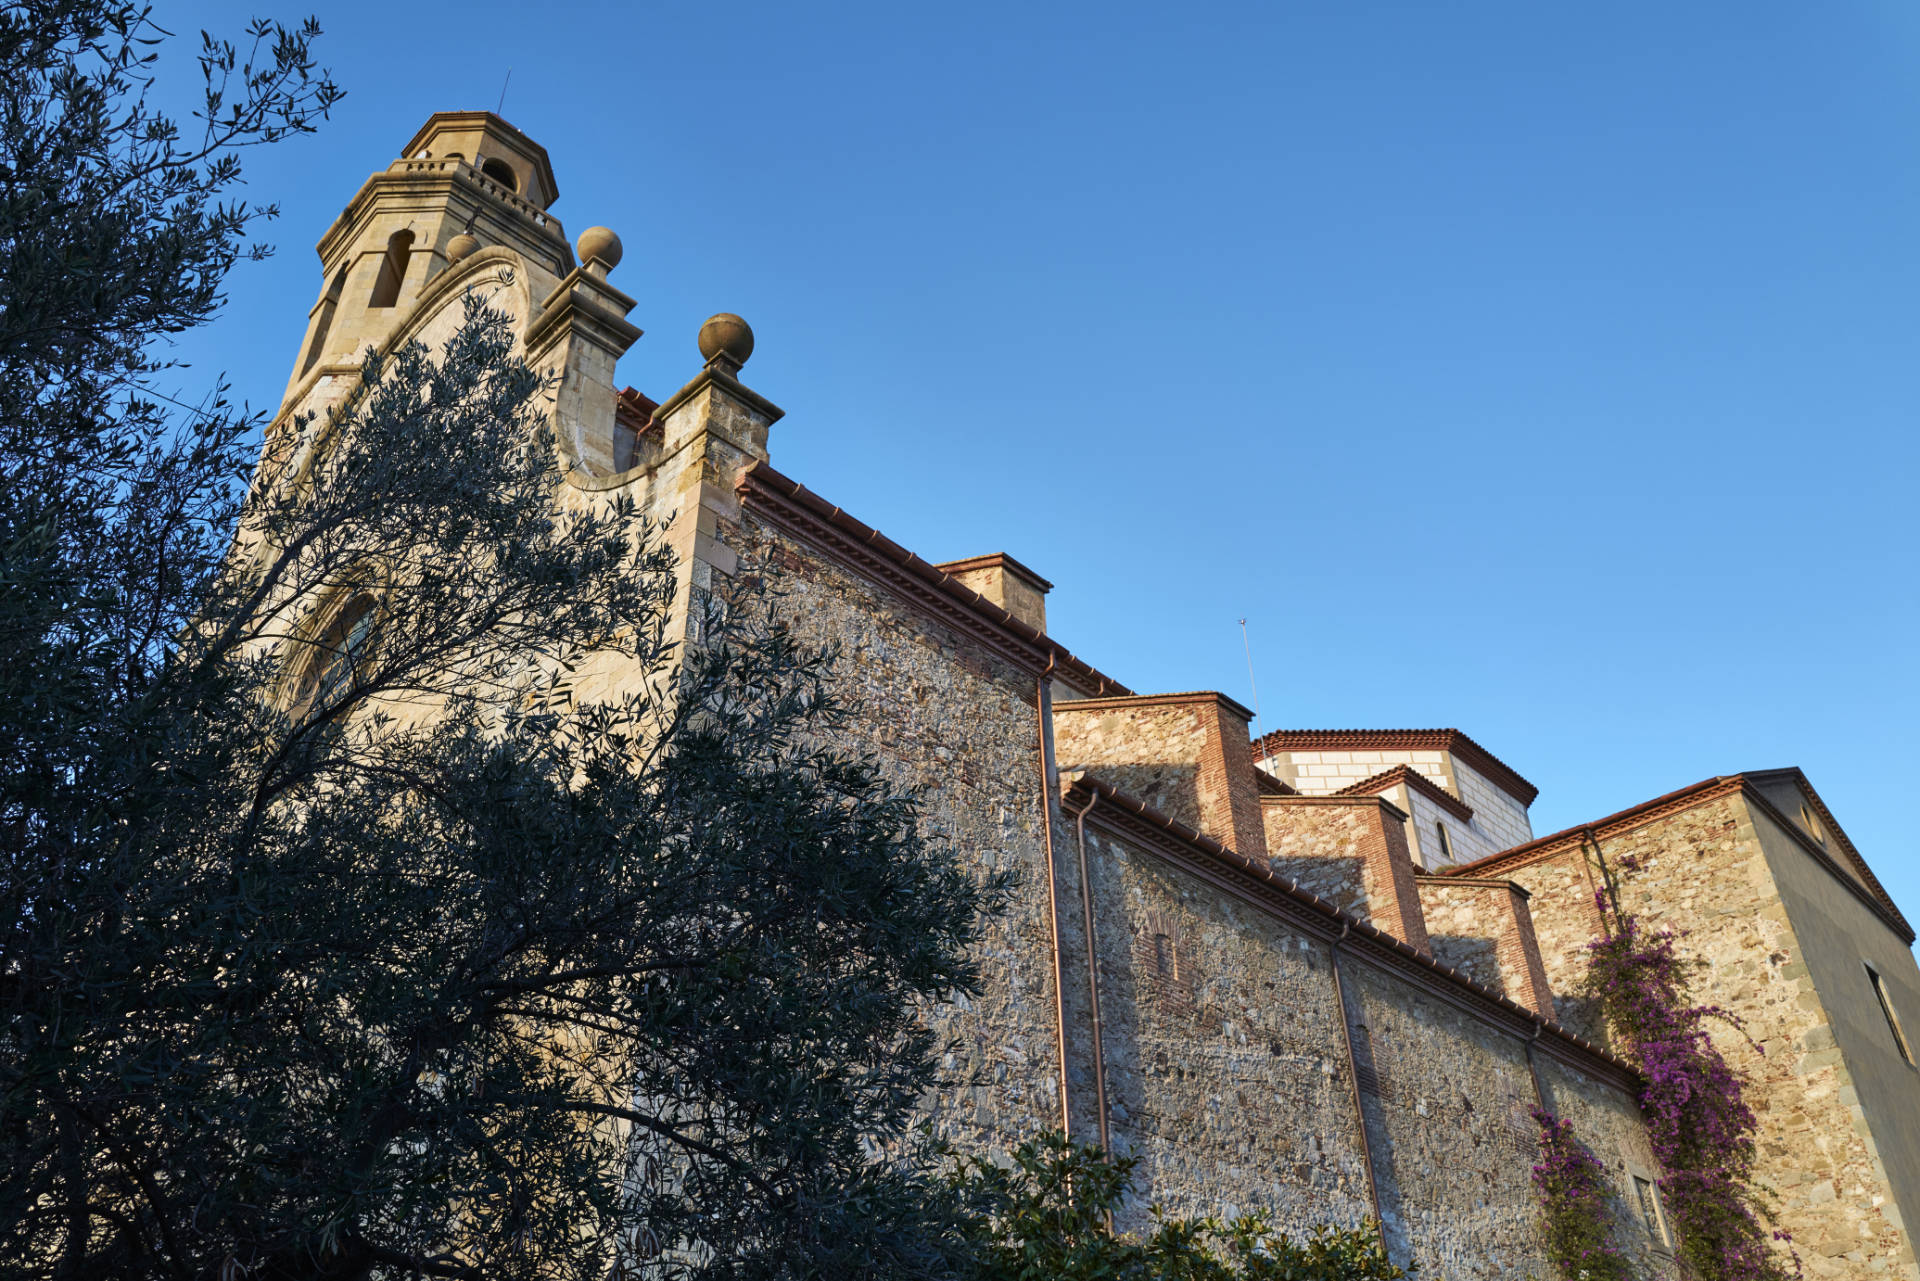 Parròquia de Santa Maria i Sant Nicolau in Calella.